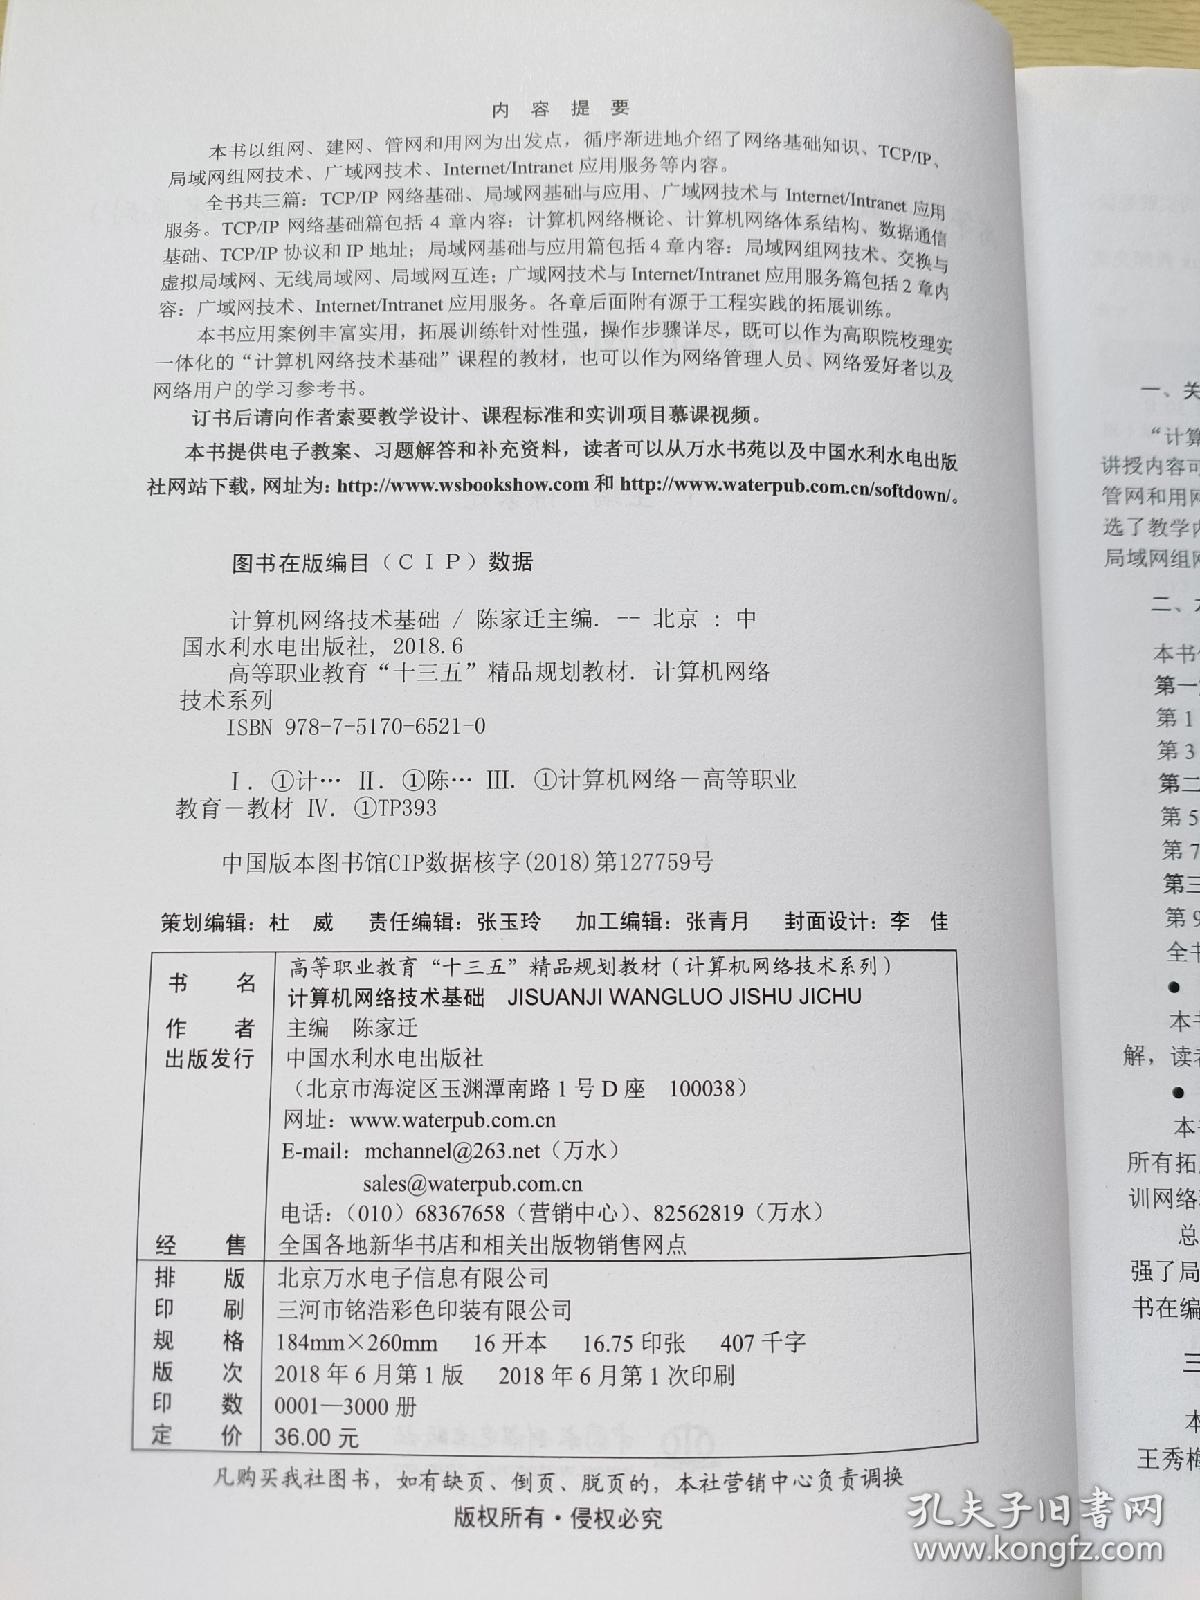 计算机网络技术基础  陈家迁  中国水利水电出版社